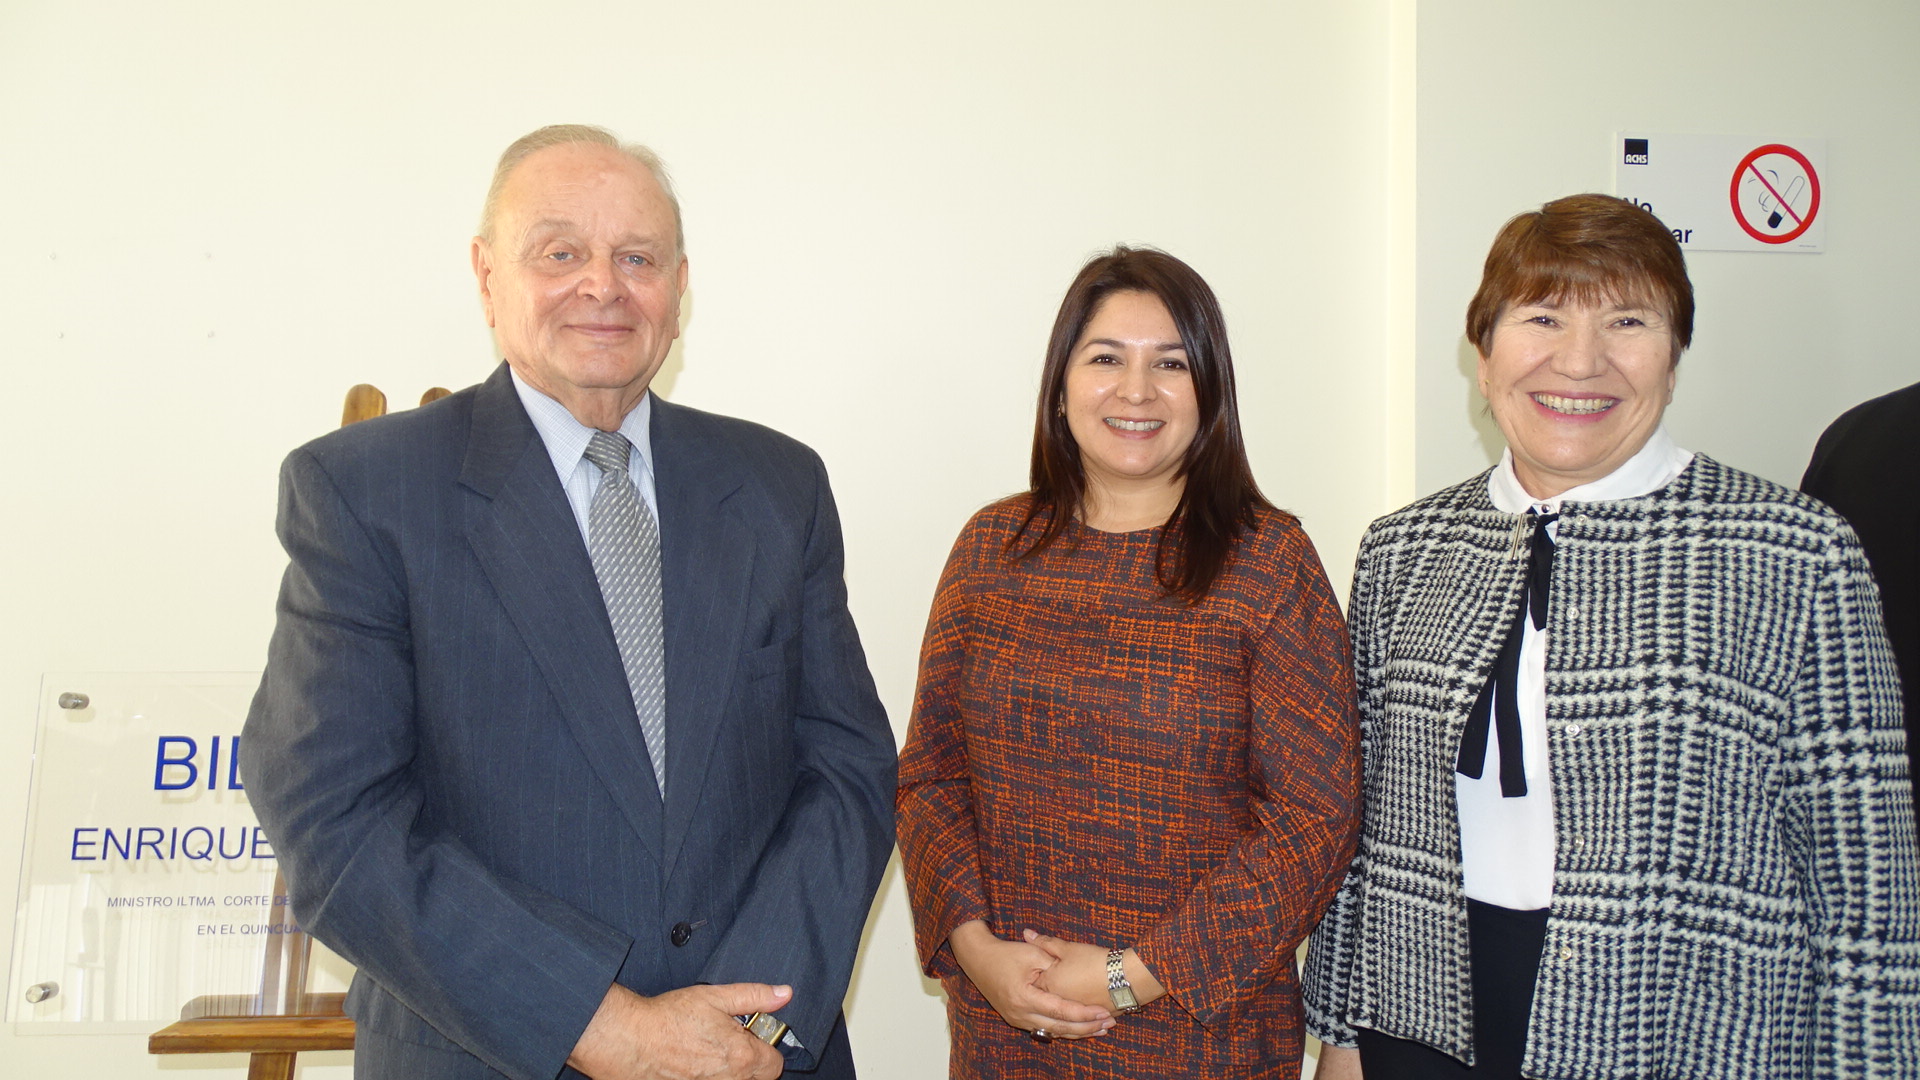 La Defensora Regional (al centro), junto al homenajeado Enrique Alvarez y a la presidenta de la Corte, Jasna Pavlich.